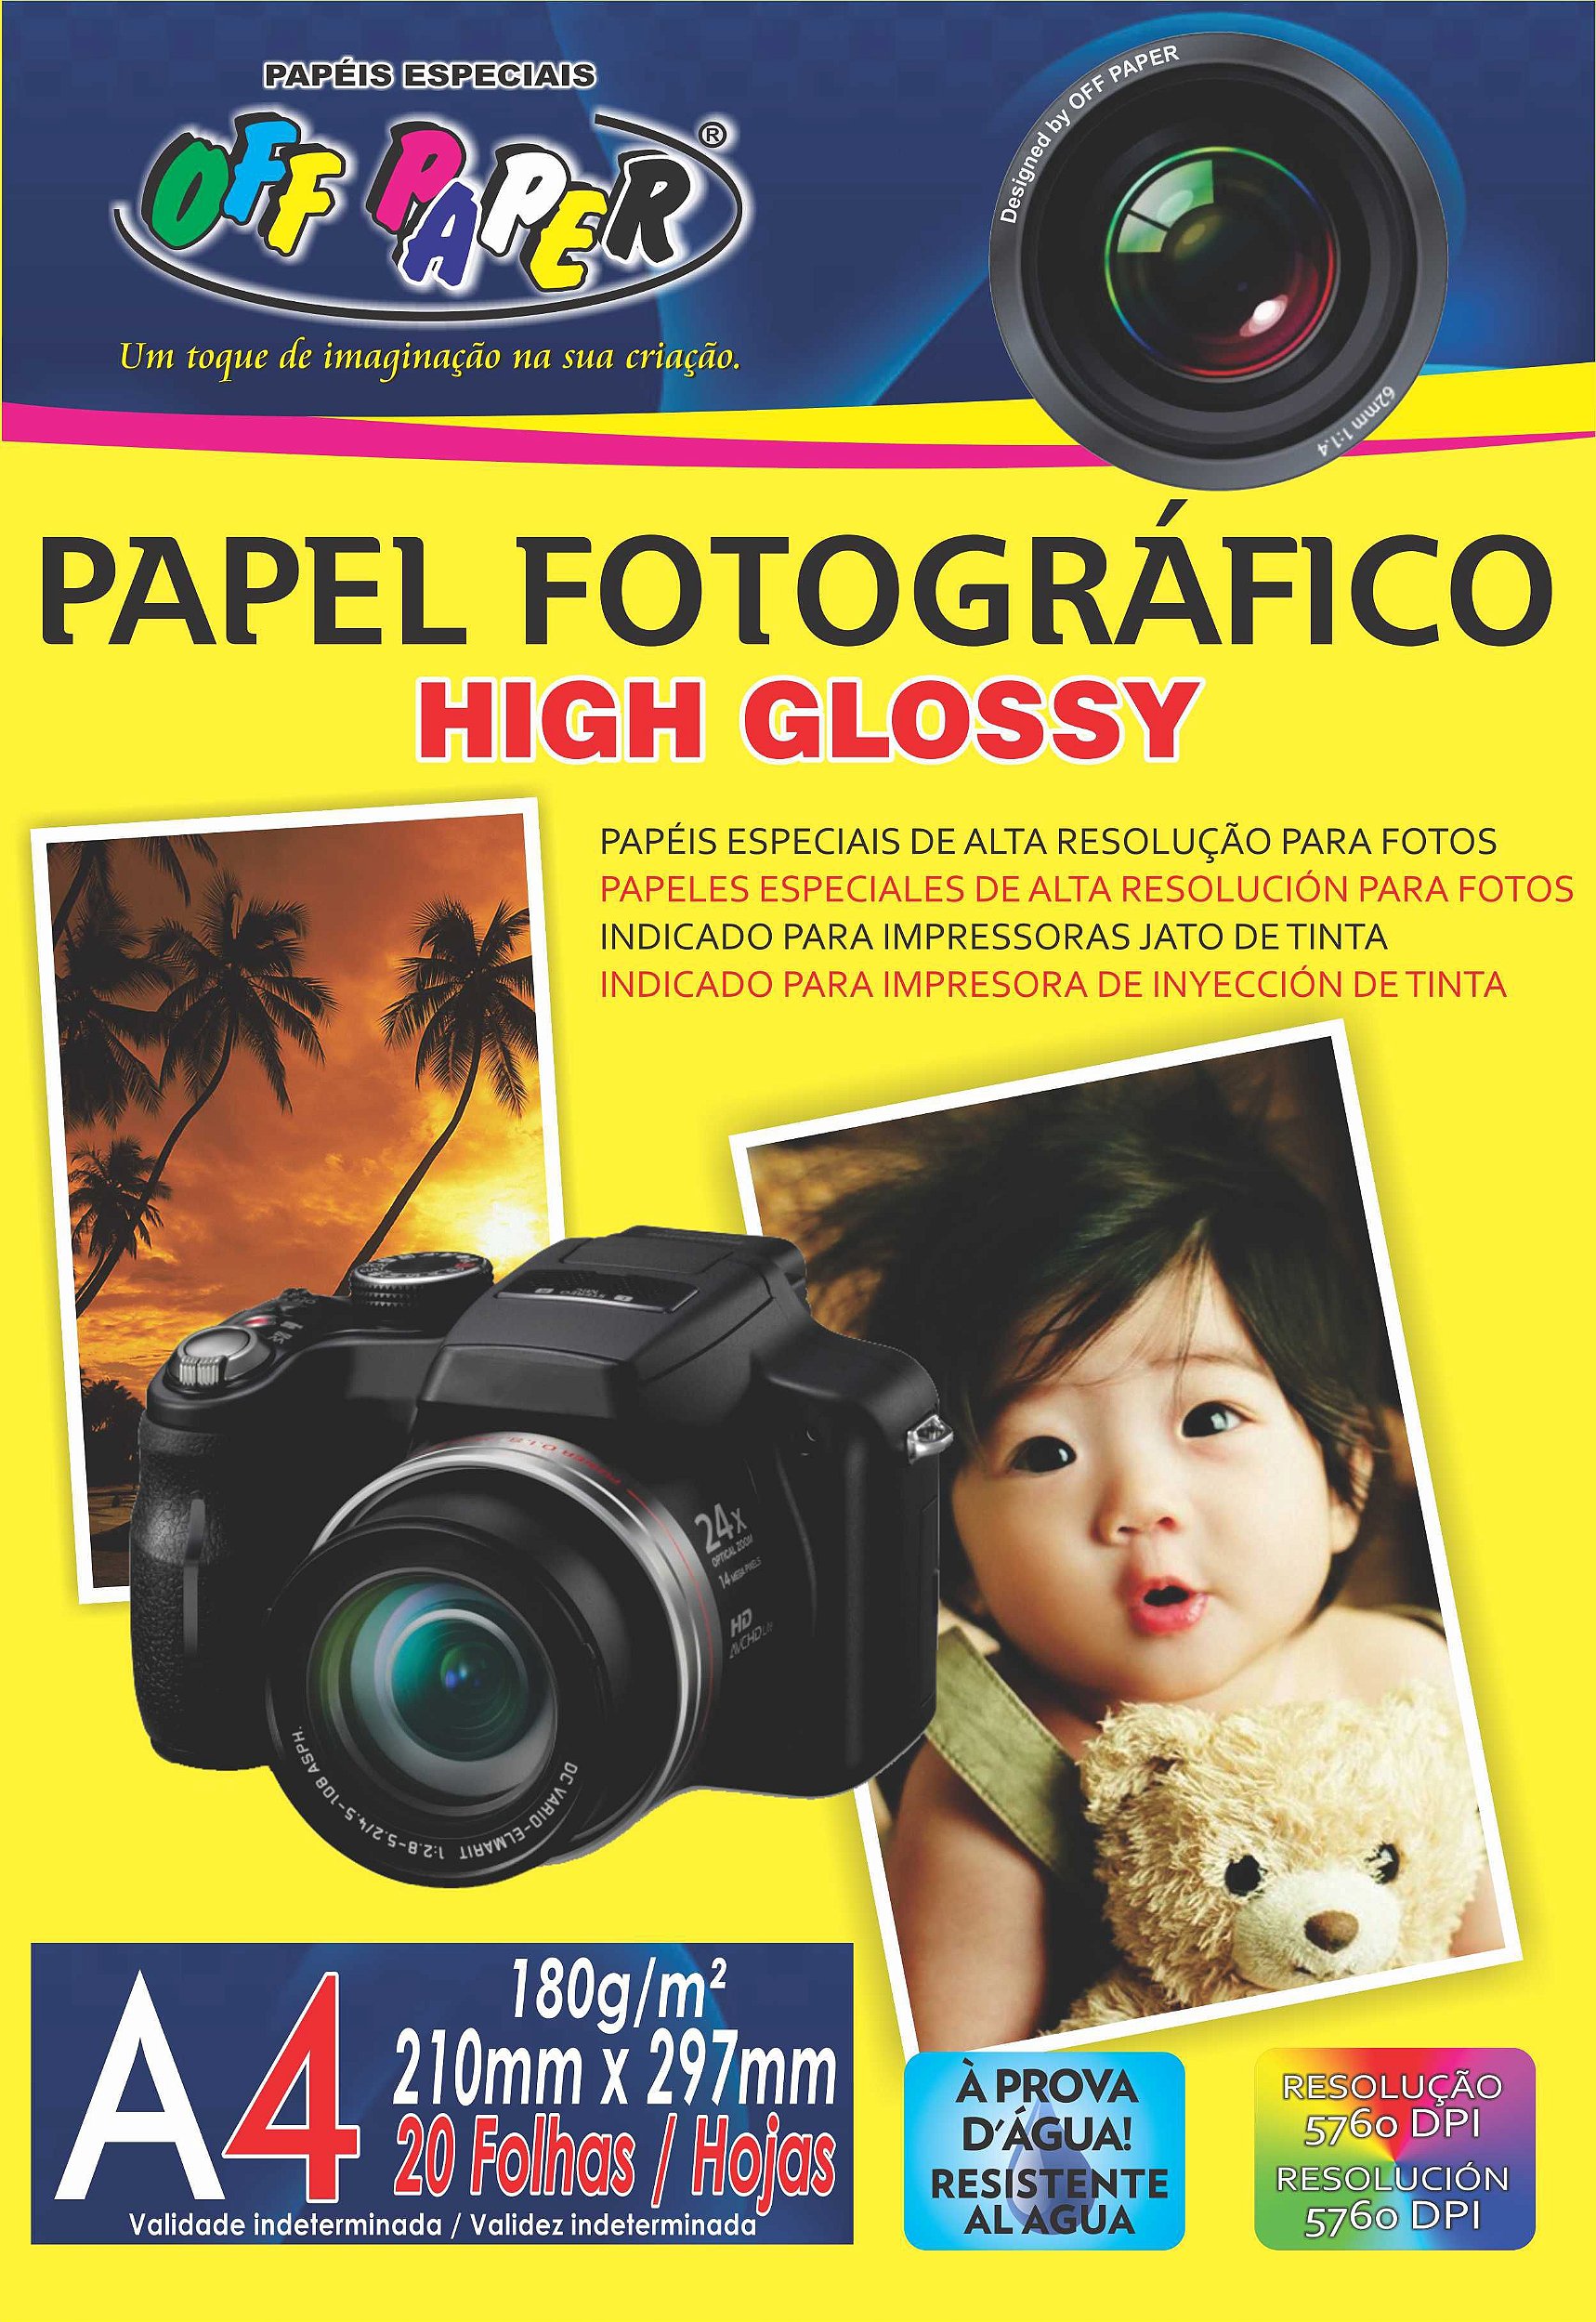 Papel Fotográfico High Glossy A4 - Jato de Tinta, pacote 20fls., 180g/m2 -  Fibrap - Sua distribuidora de Papel e Produção Gráfica